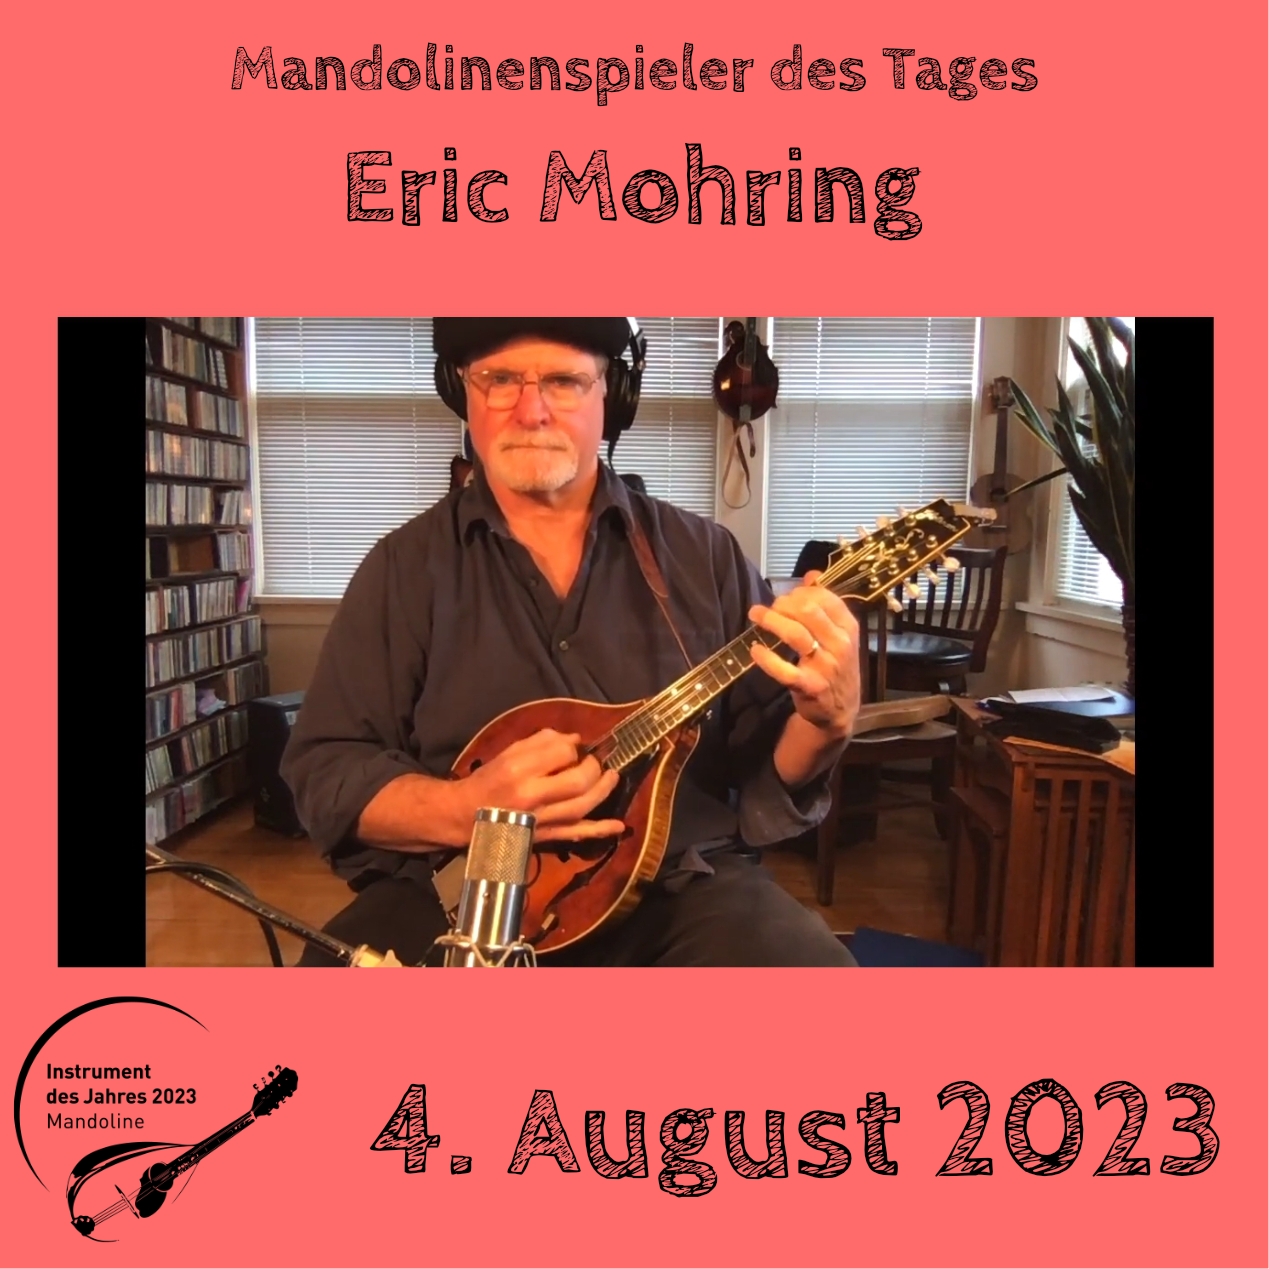 4. August  - Eric Mohring Mandoline Instrument des Jahres 2023 Mandolinenspieler Mandolinenspielerin des Tages